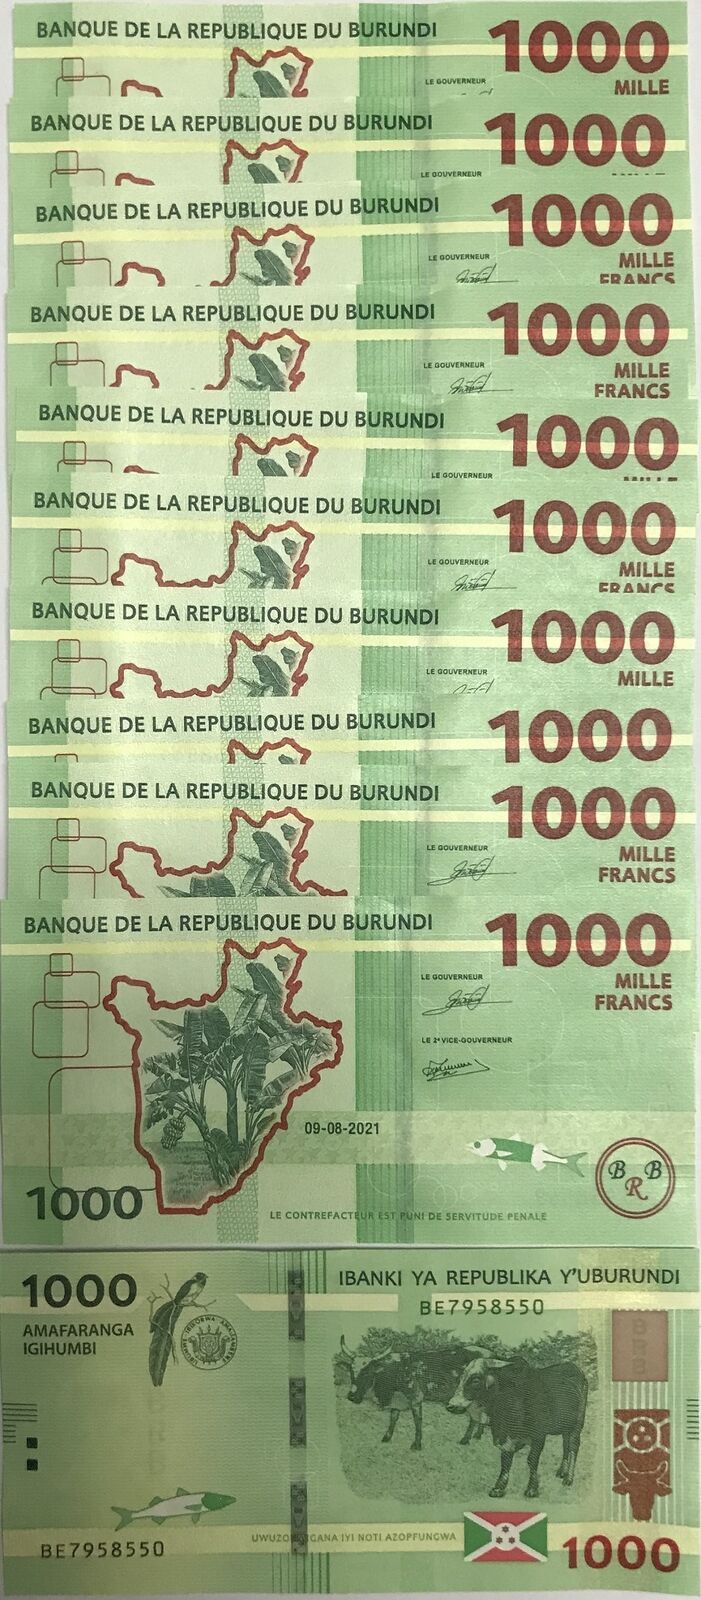 Burundi 1000 Francs 2021 P 51 UNC LOT 10 PCS